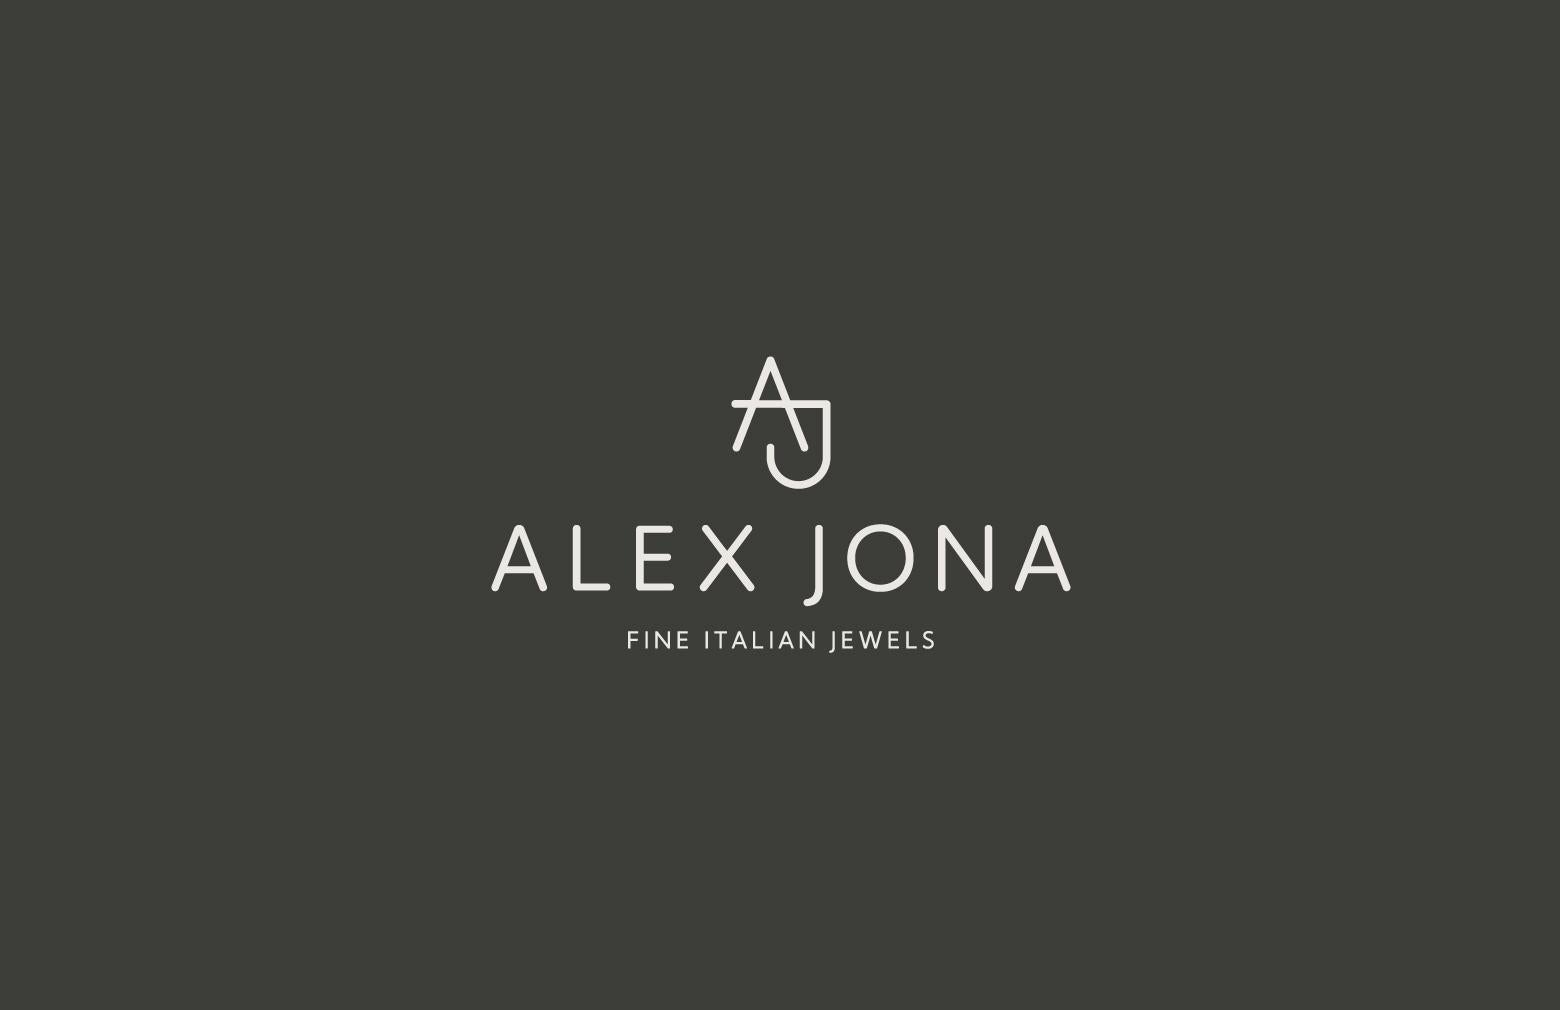 Alex Jona Lapis Lazuli Chalcedony 18k White Gold Button Cufflinks For Sale 5